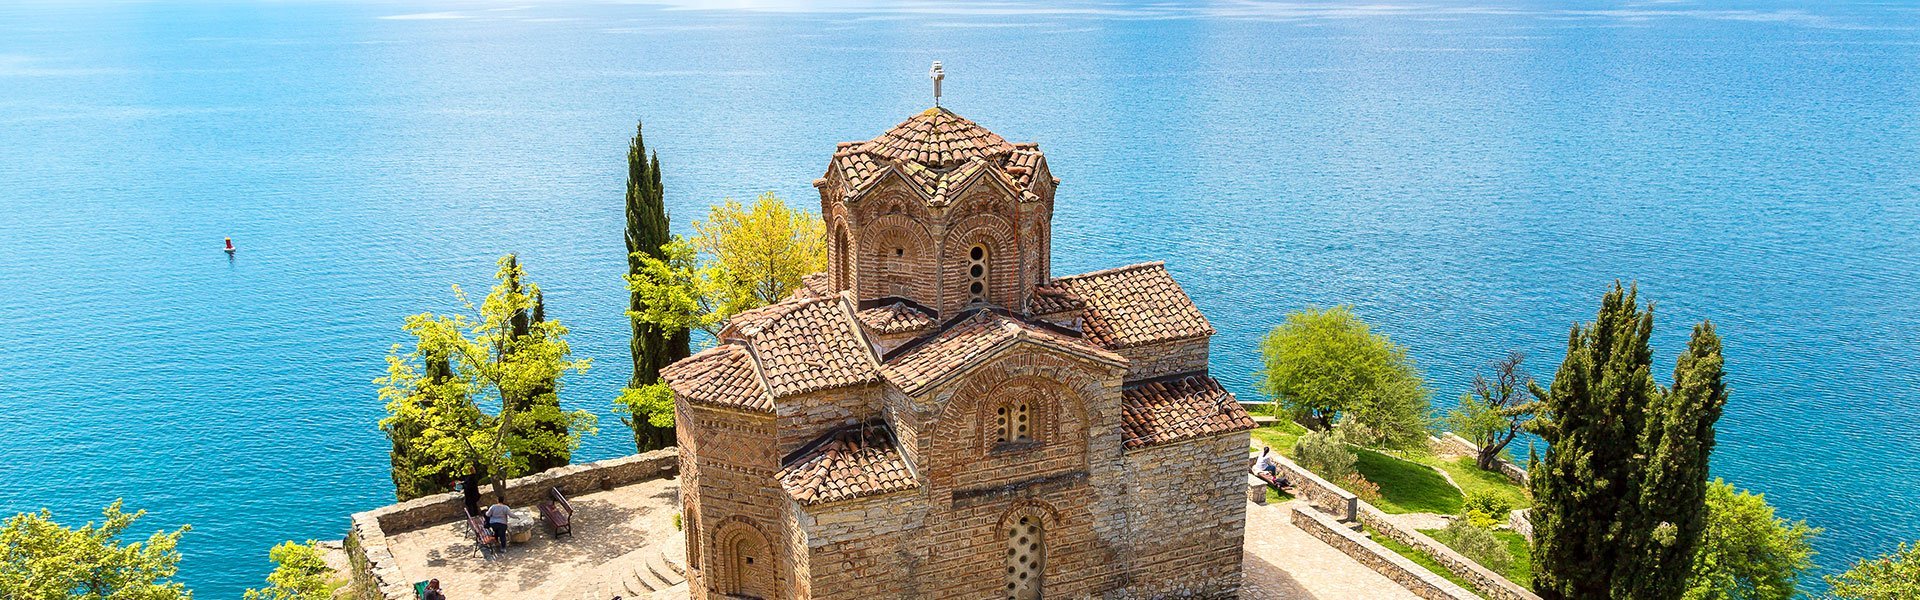 Meer van Ohrid, Noord-Macedonië